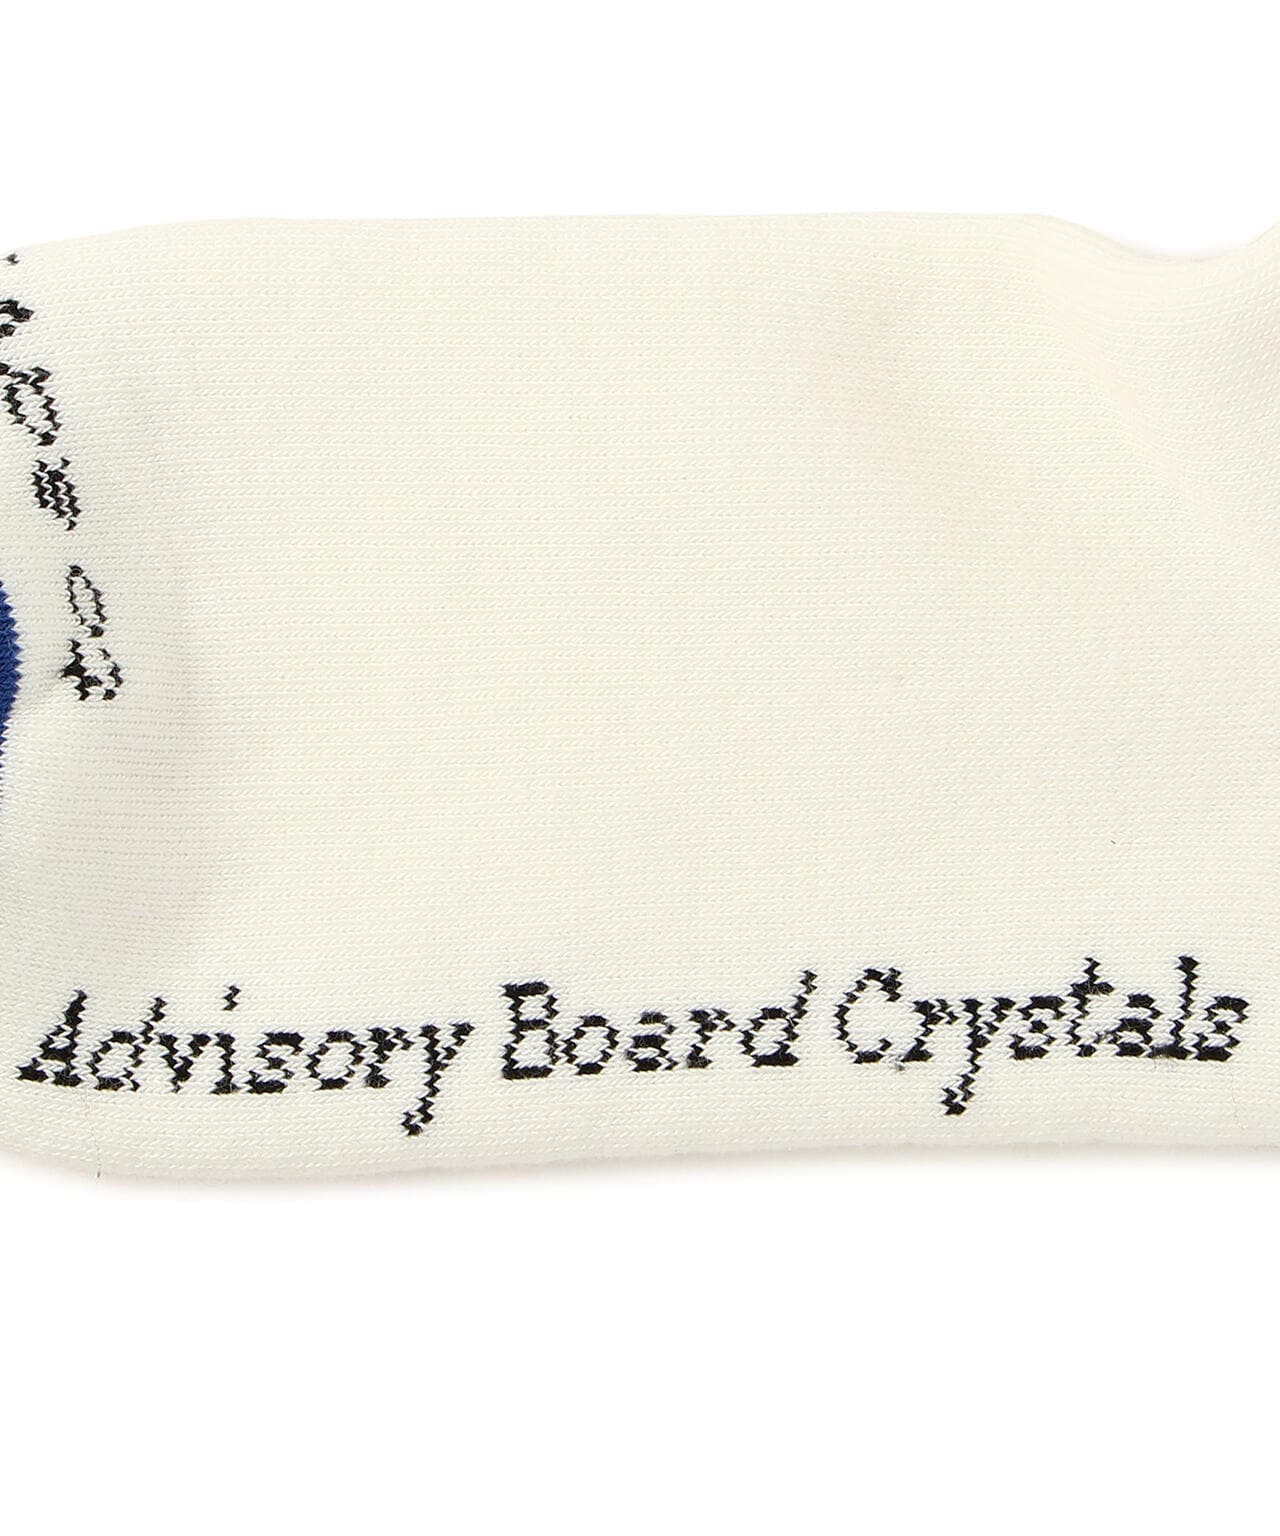 advisory board crystalsトレーナー 通販